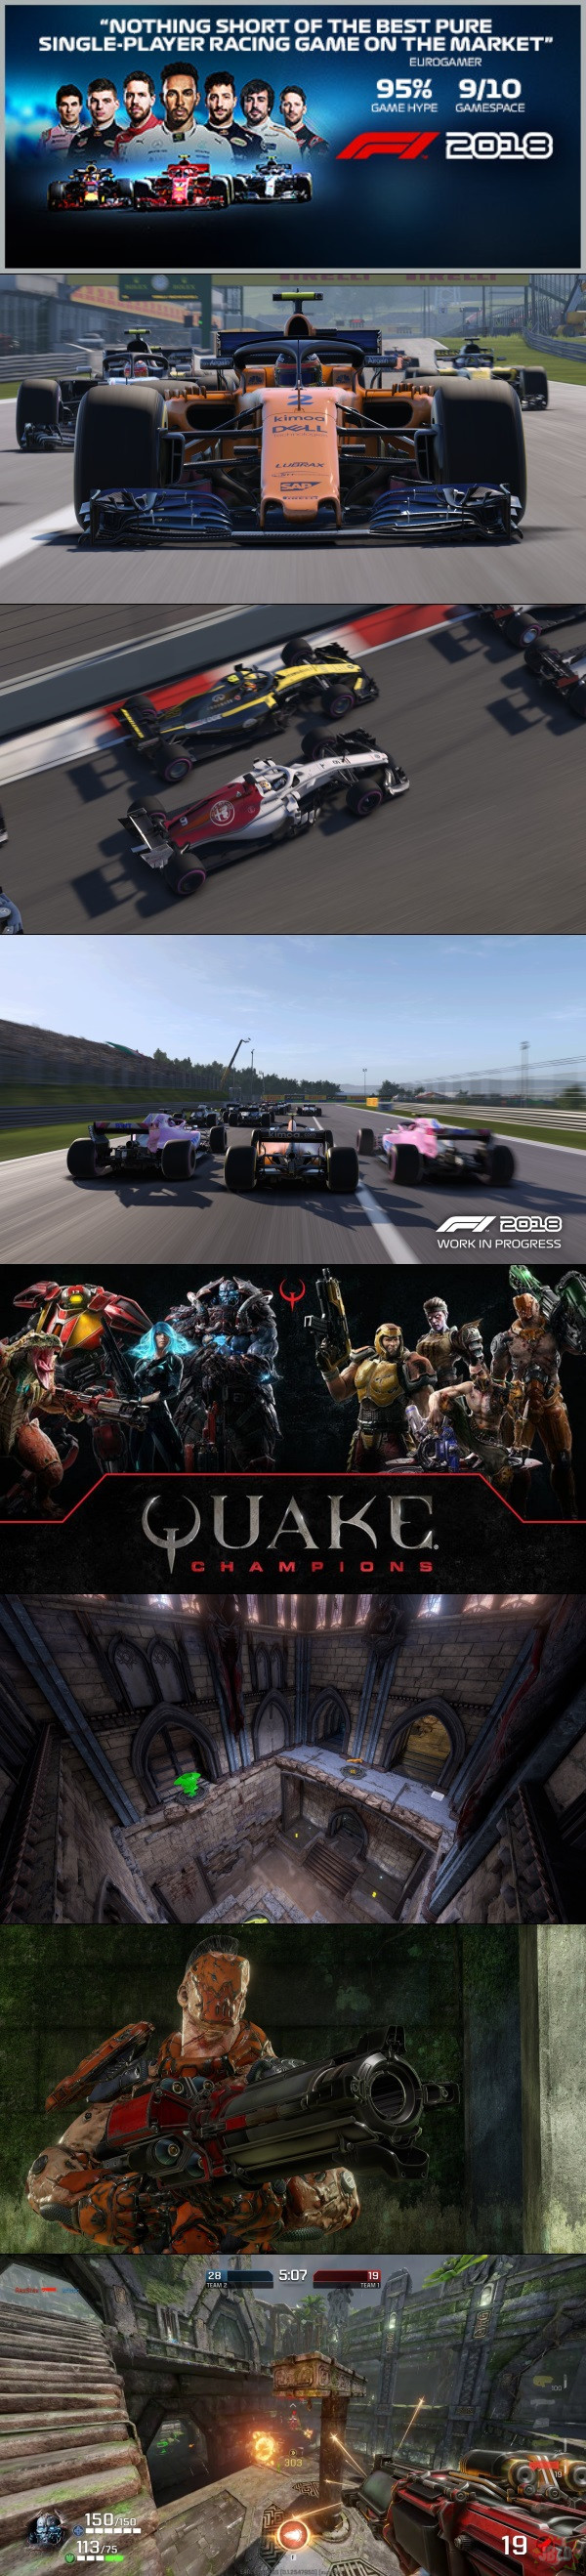 F1 2018 za darmo w Humble Store (Steam) oraz wszystkie postacie w Quake Champions za darmo z okazji QuakeCon